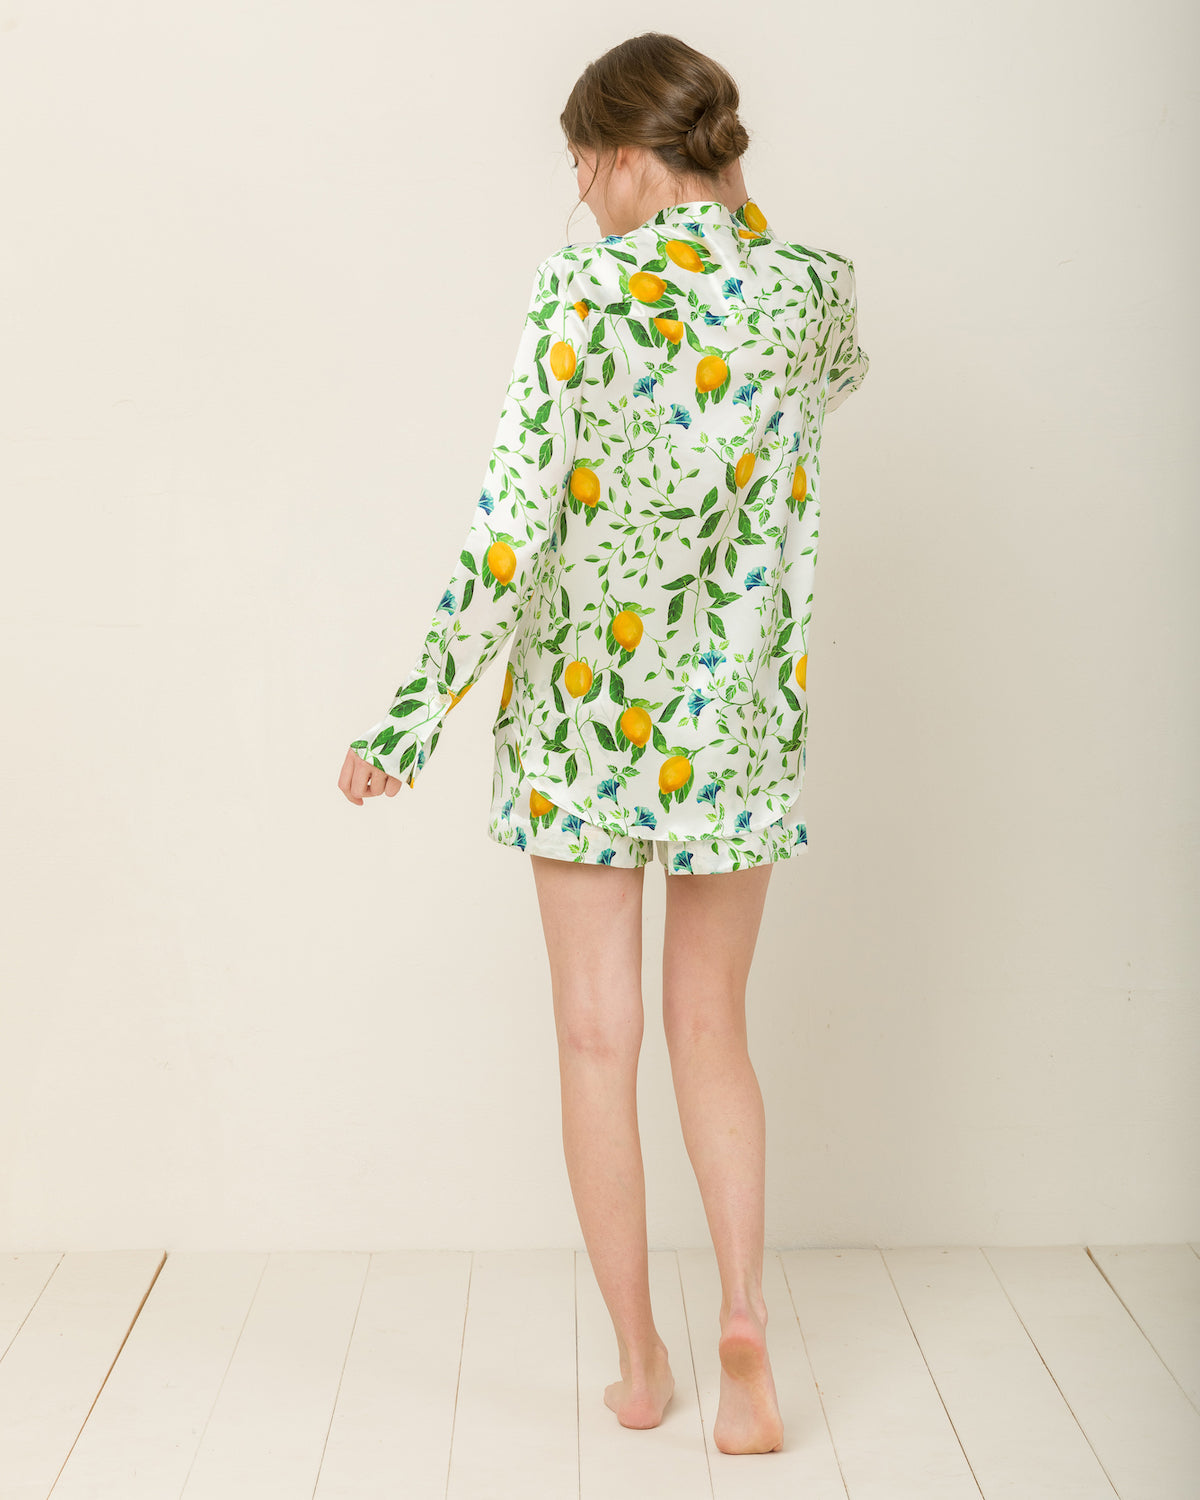 Laura in Positano Garden - Top Loungewear, Pyjama, Seidenpyjama, Schlafanzug | RADICE